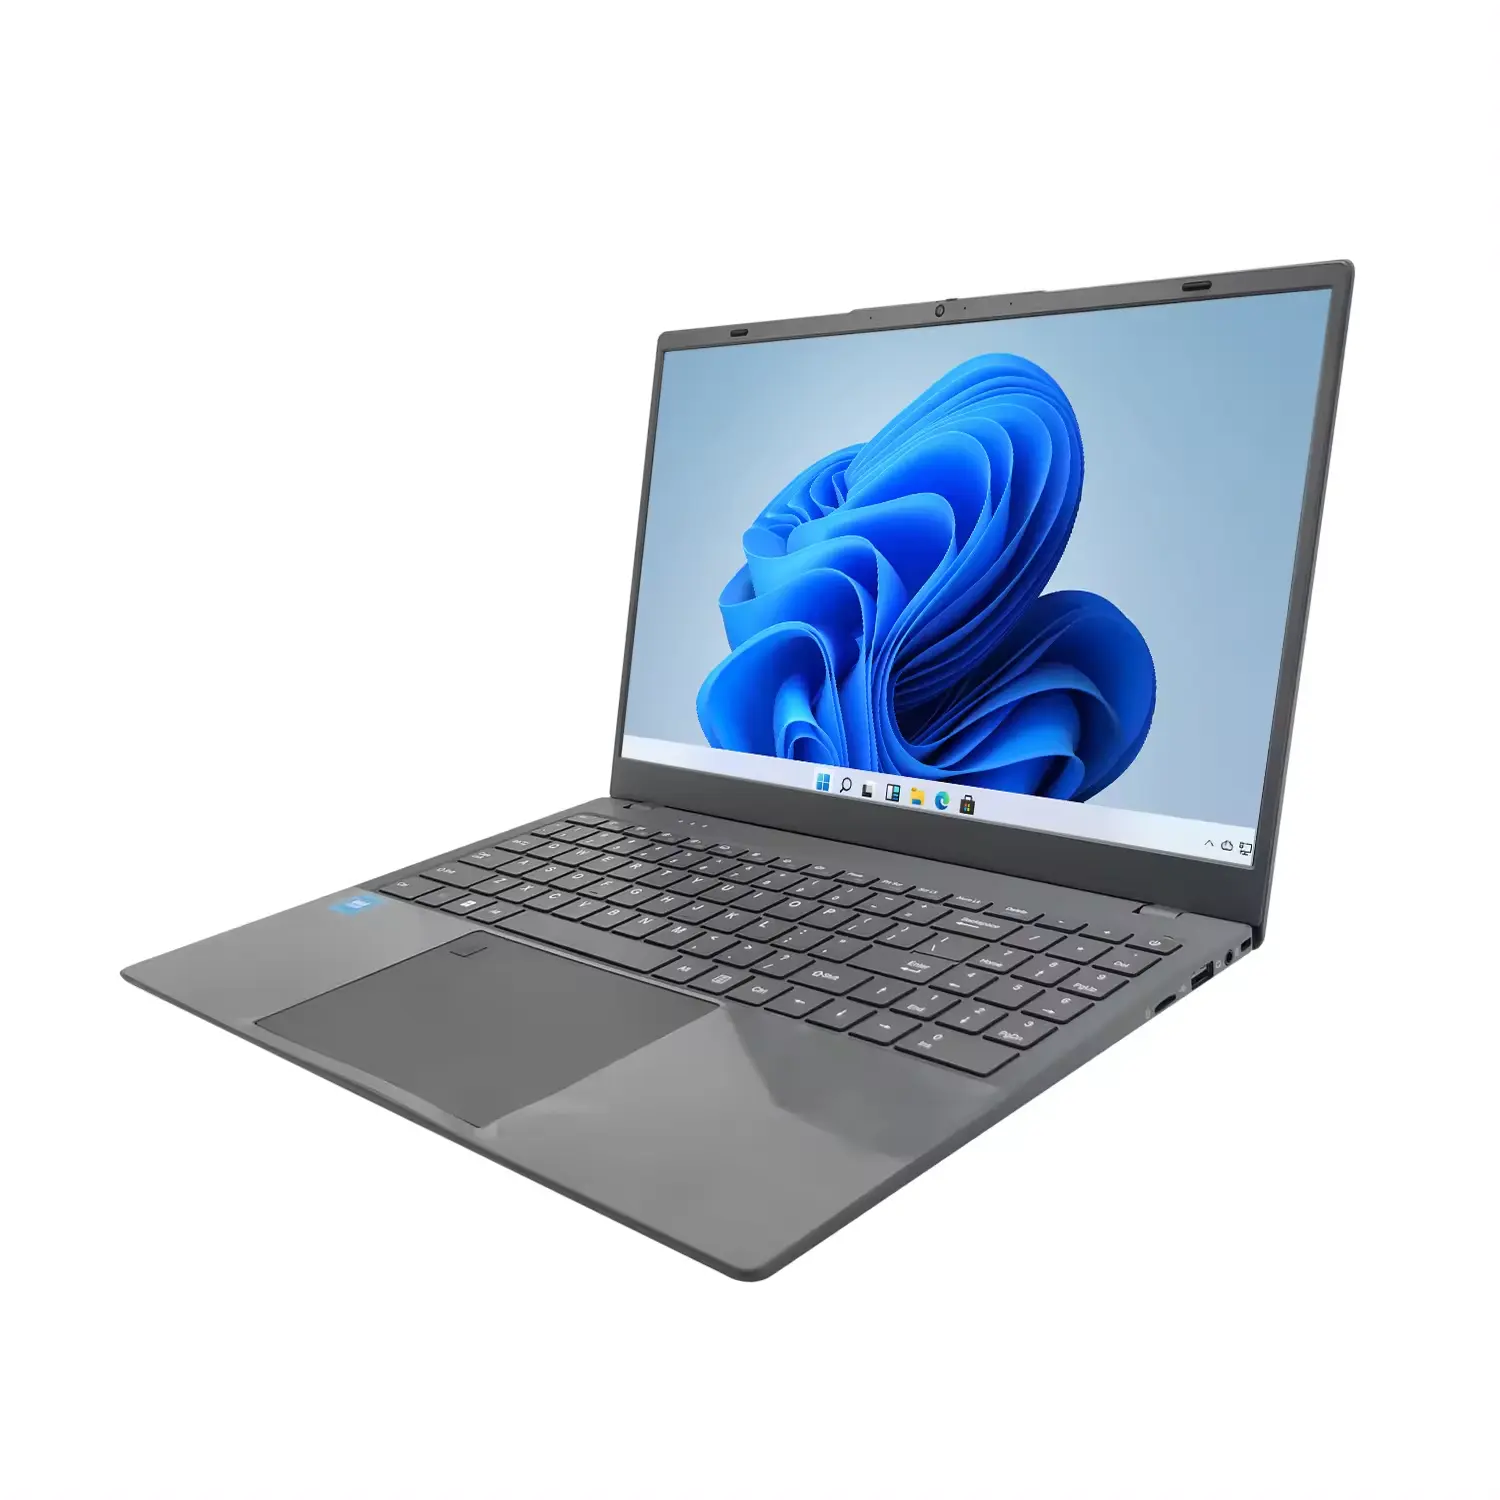 DIXIANG Großhandel günstigster Preis brandneu 15,6 Zoll i5-1035G4 DDR4 16 GB Notebook Computer Geschäft Gaming I5 Laptop